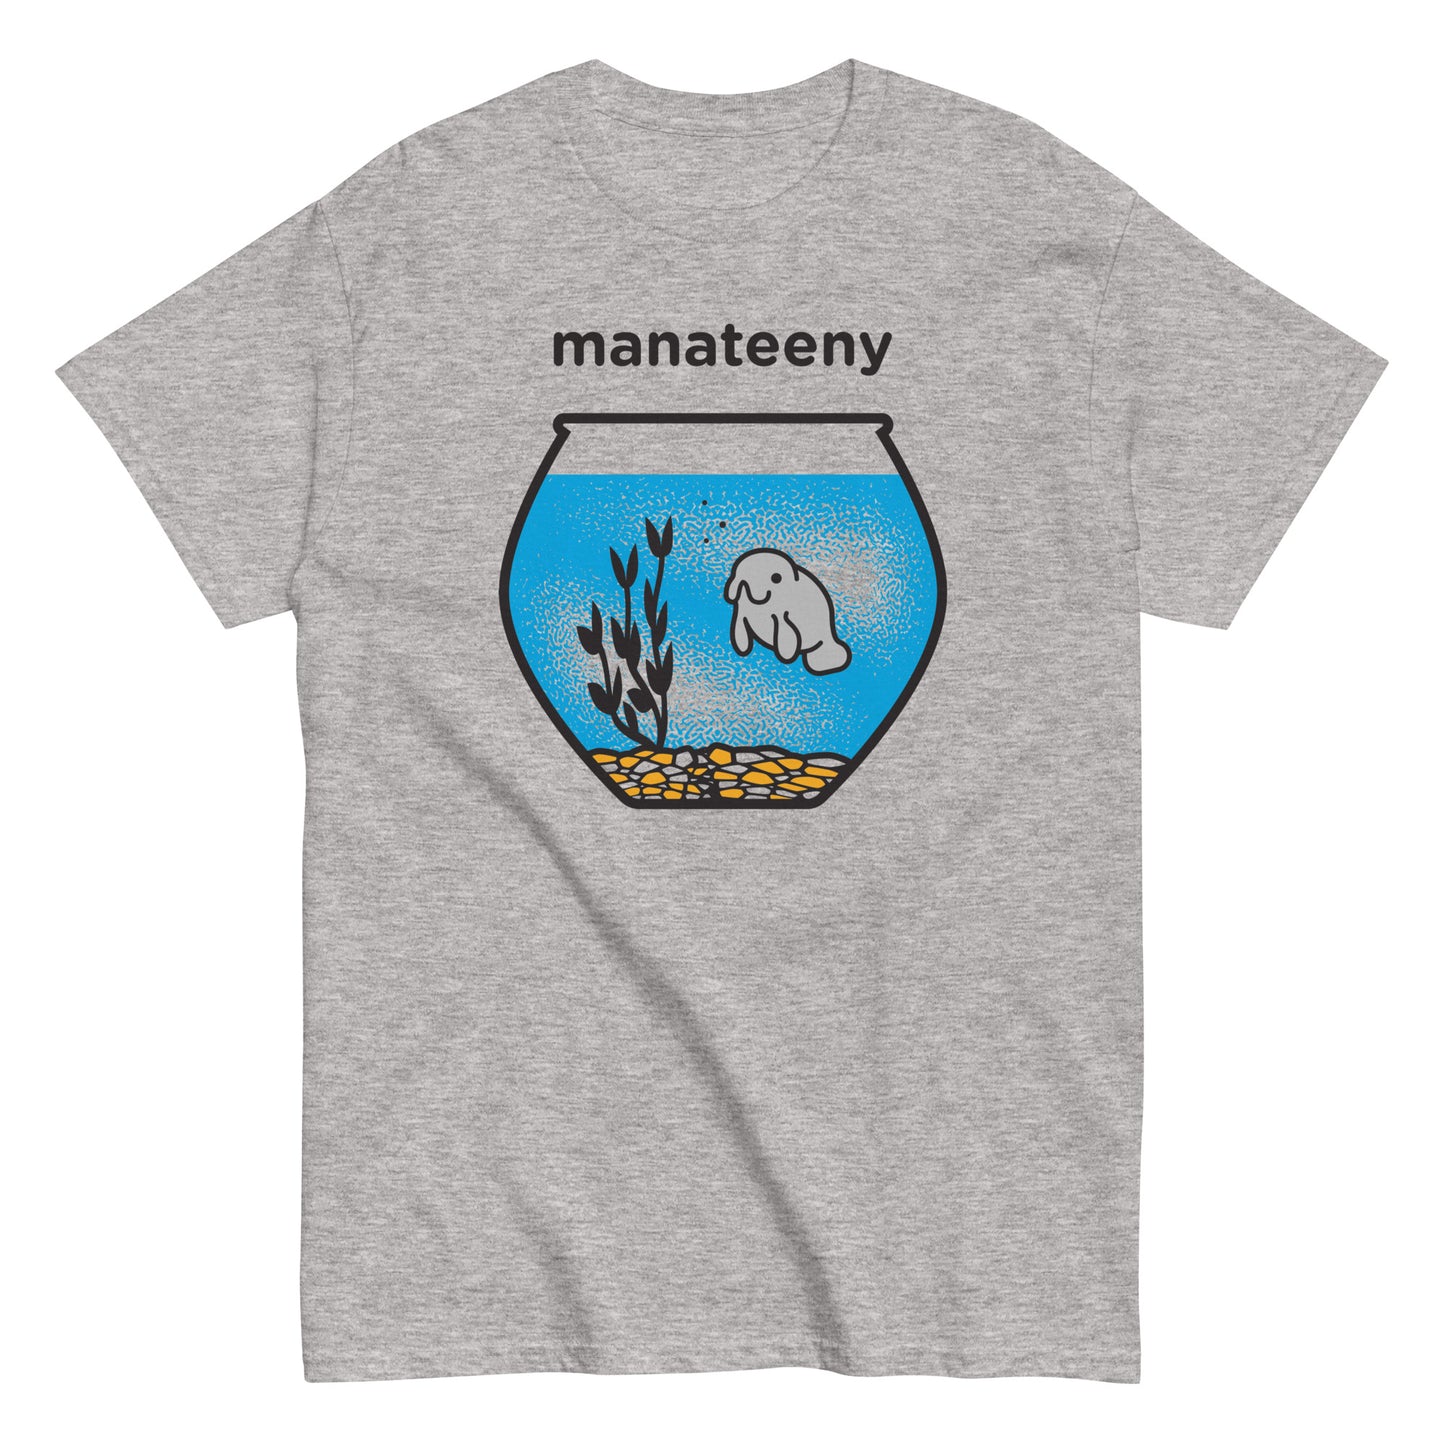 Manateeny Men's Classic Tee